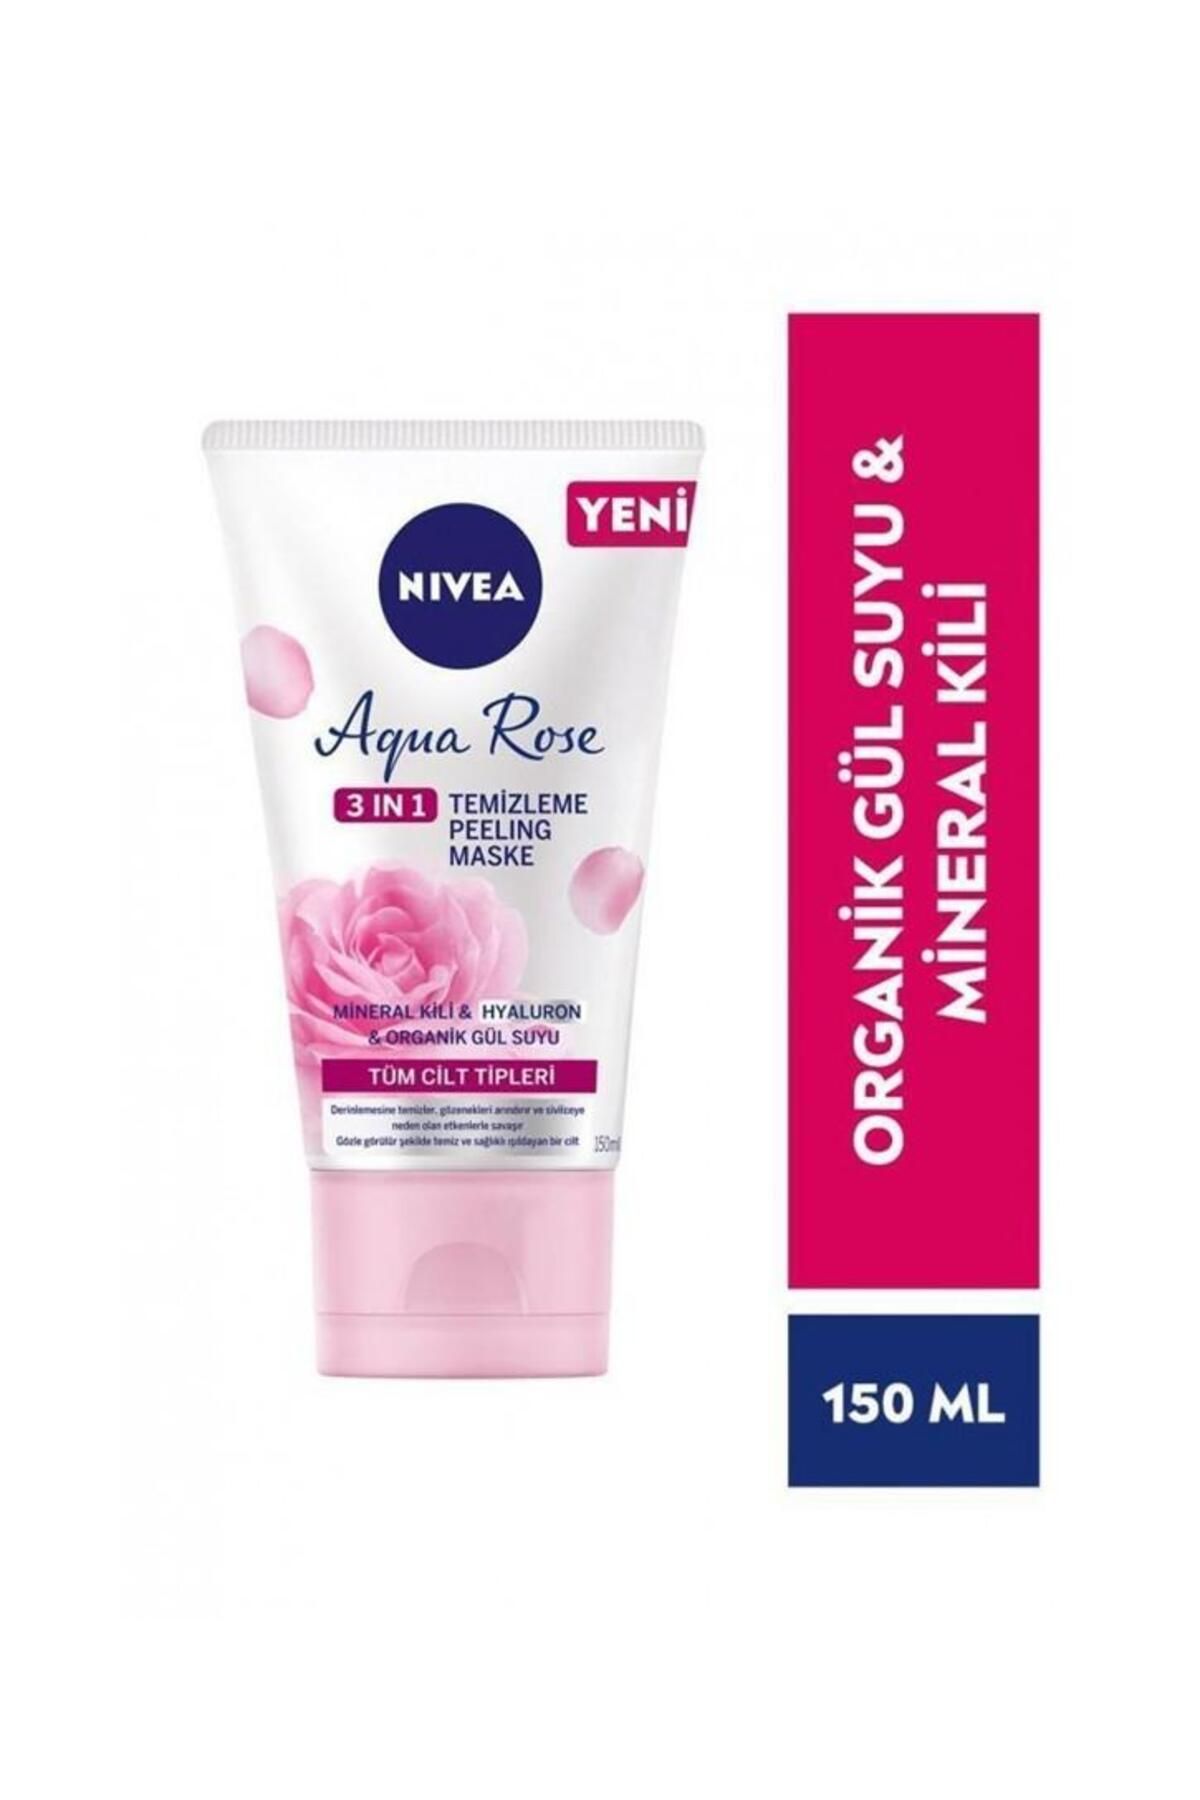 NIVEA Aqua Rose 3ü1 Arada Yüz Temizleme Peeling Maske Gül Suyu Mineral Kili 150ml